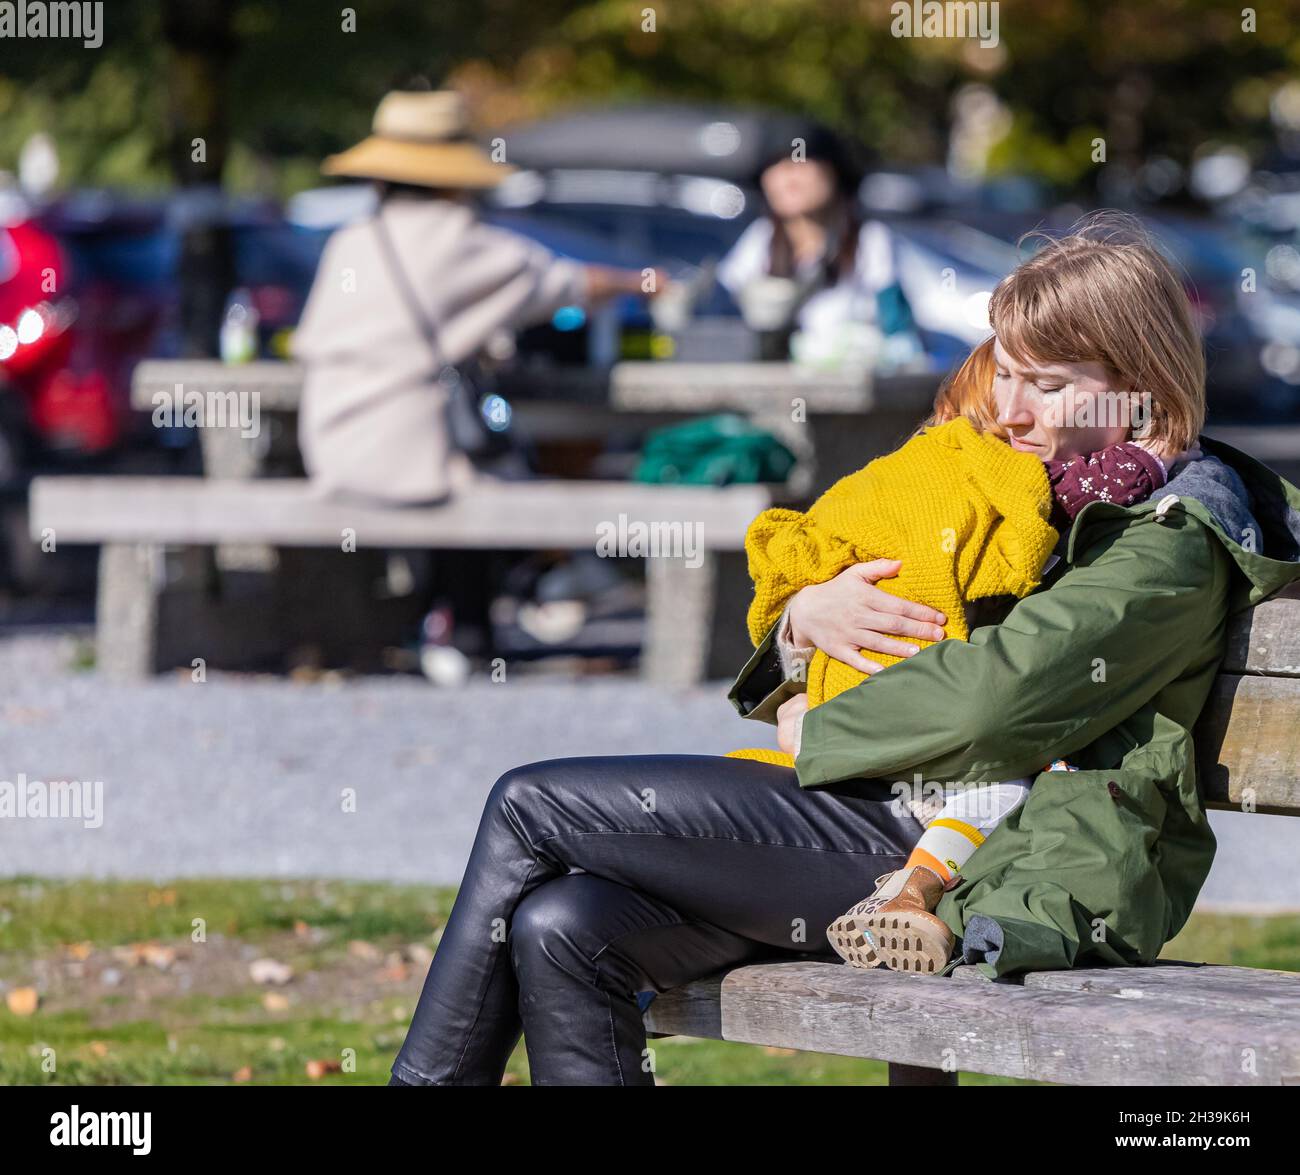 Kleine traurige Tochter umarmte ihre Mutter. Mutter umarmt ihr kleines Kind im Freien in einem Park. Herbstsaison. Blick auf die Straße, verschwommener Hintergrund, Konzeptstudie Stockfoto